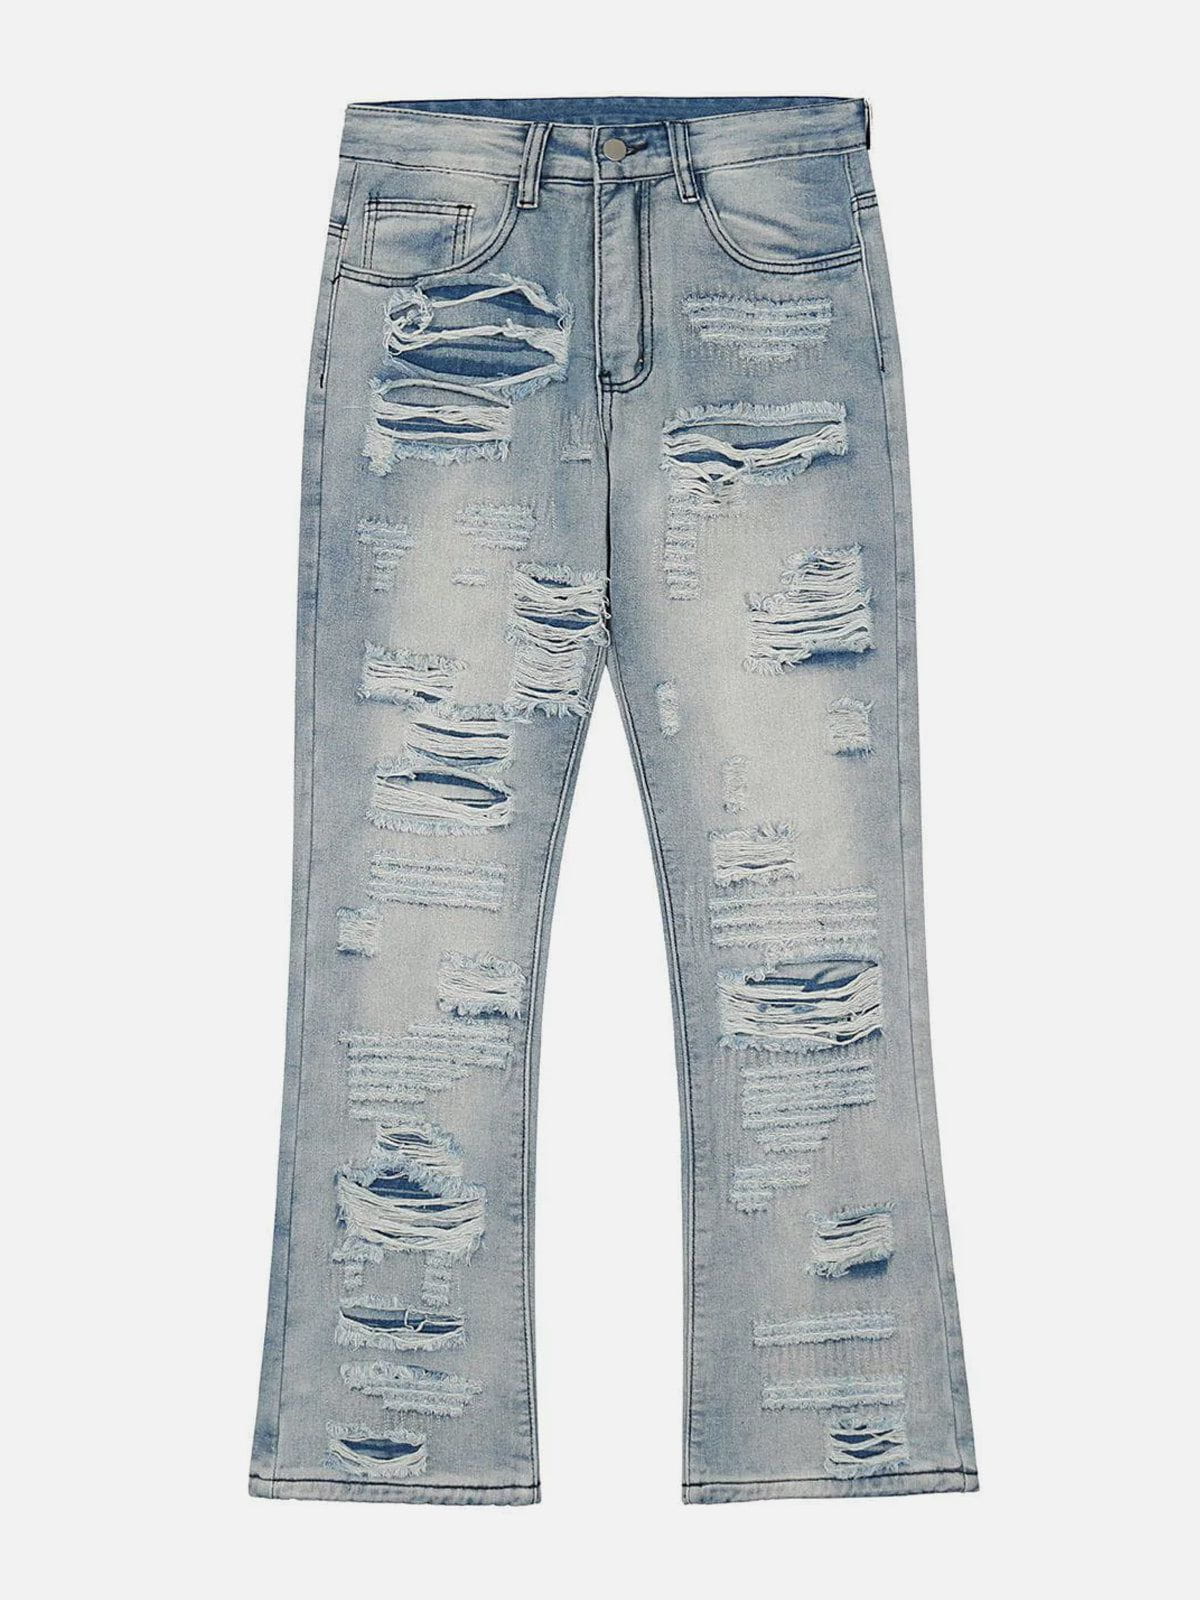 Eprezzy® - Ripped Hole Jeans Streetwear Fashion - eprezzy.com